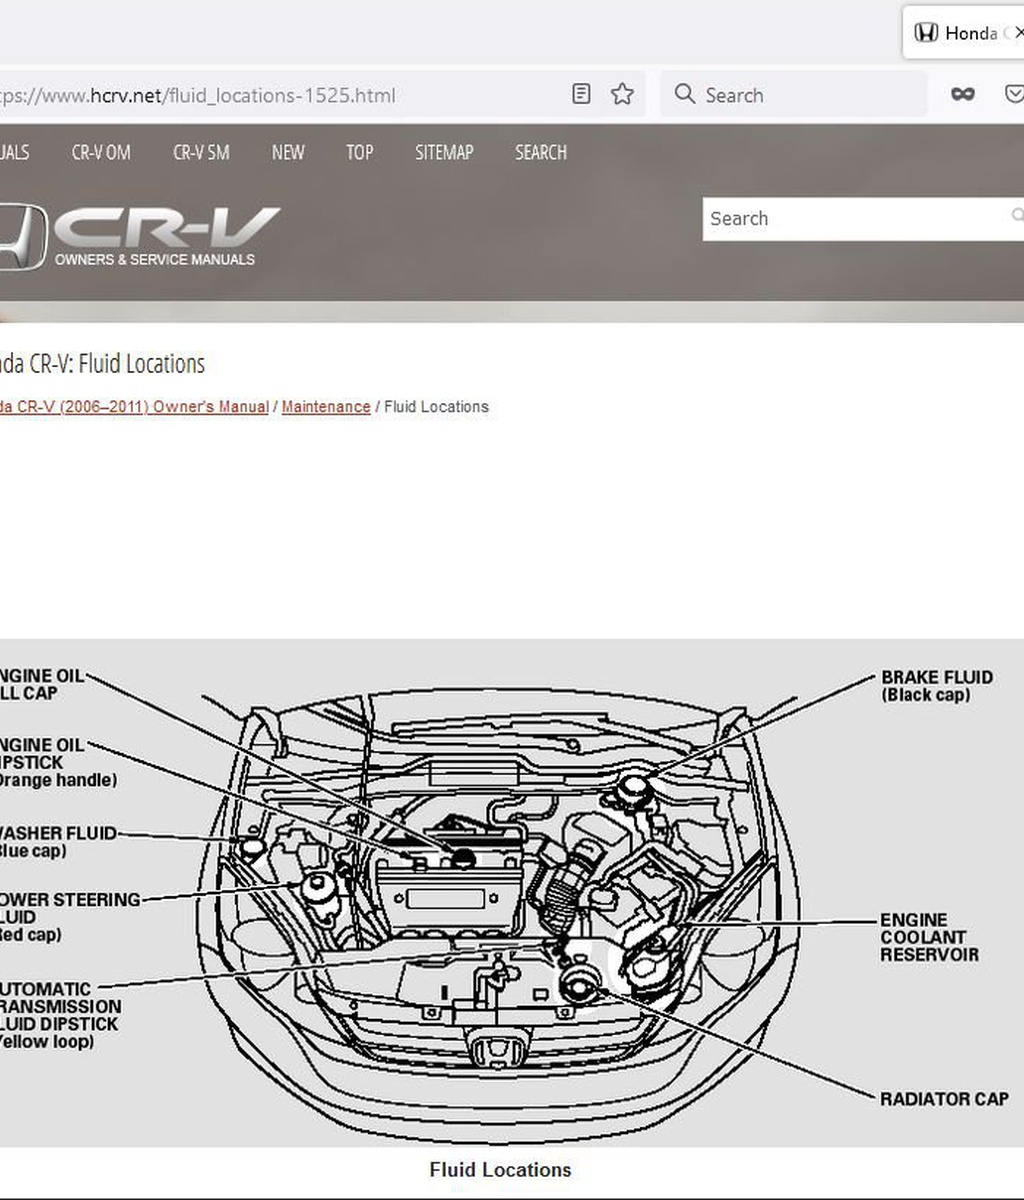 Honda CR-V: manuals and service guides|bekomcar.com